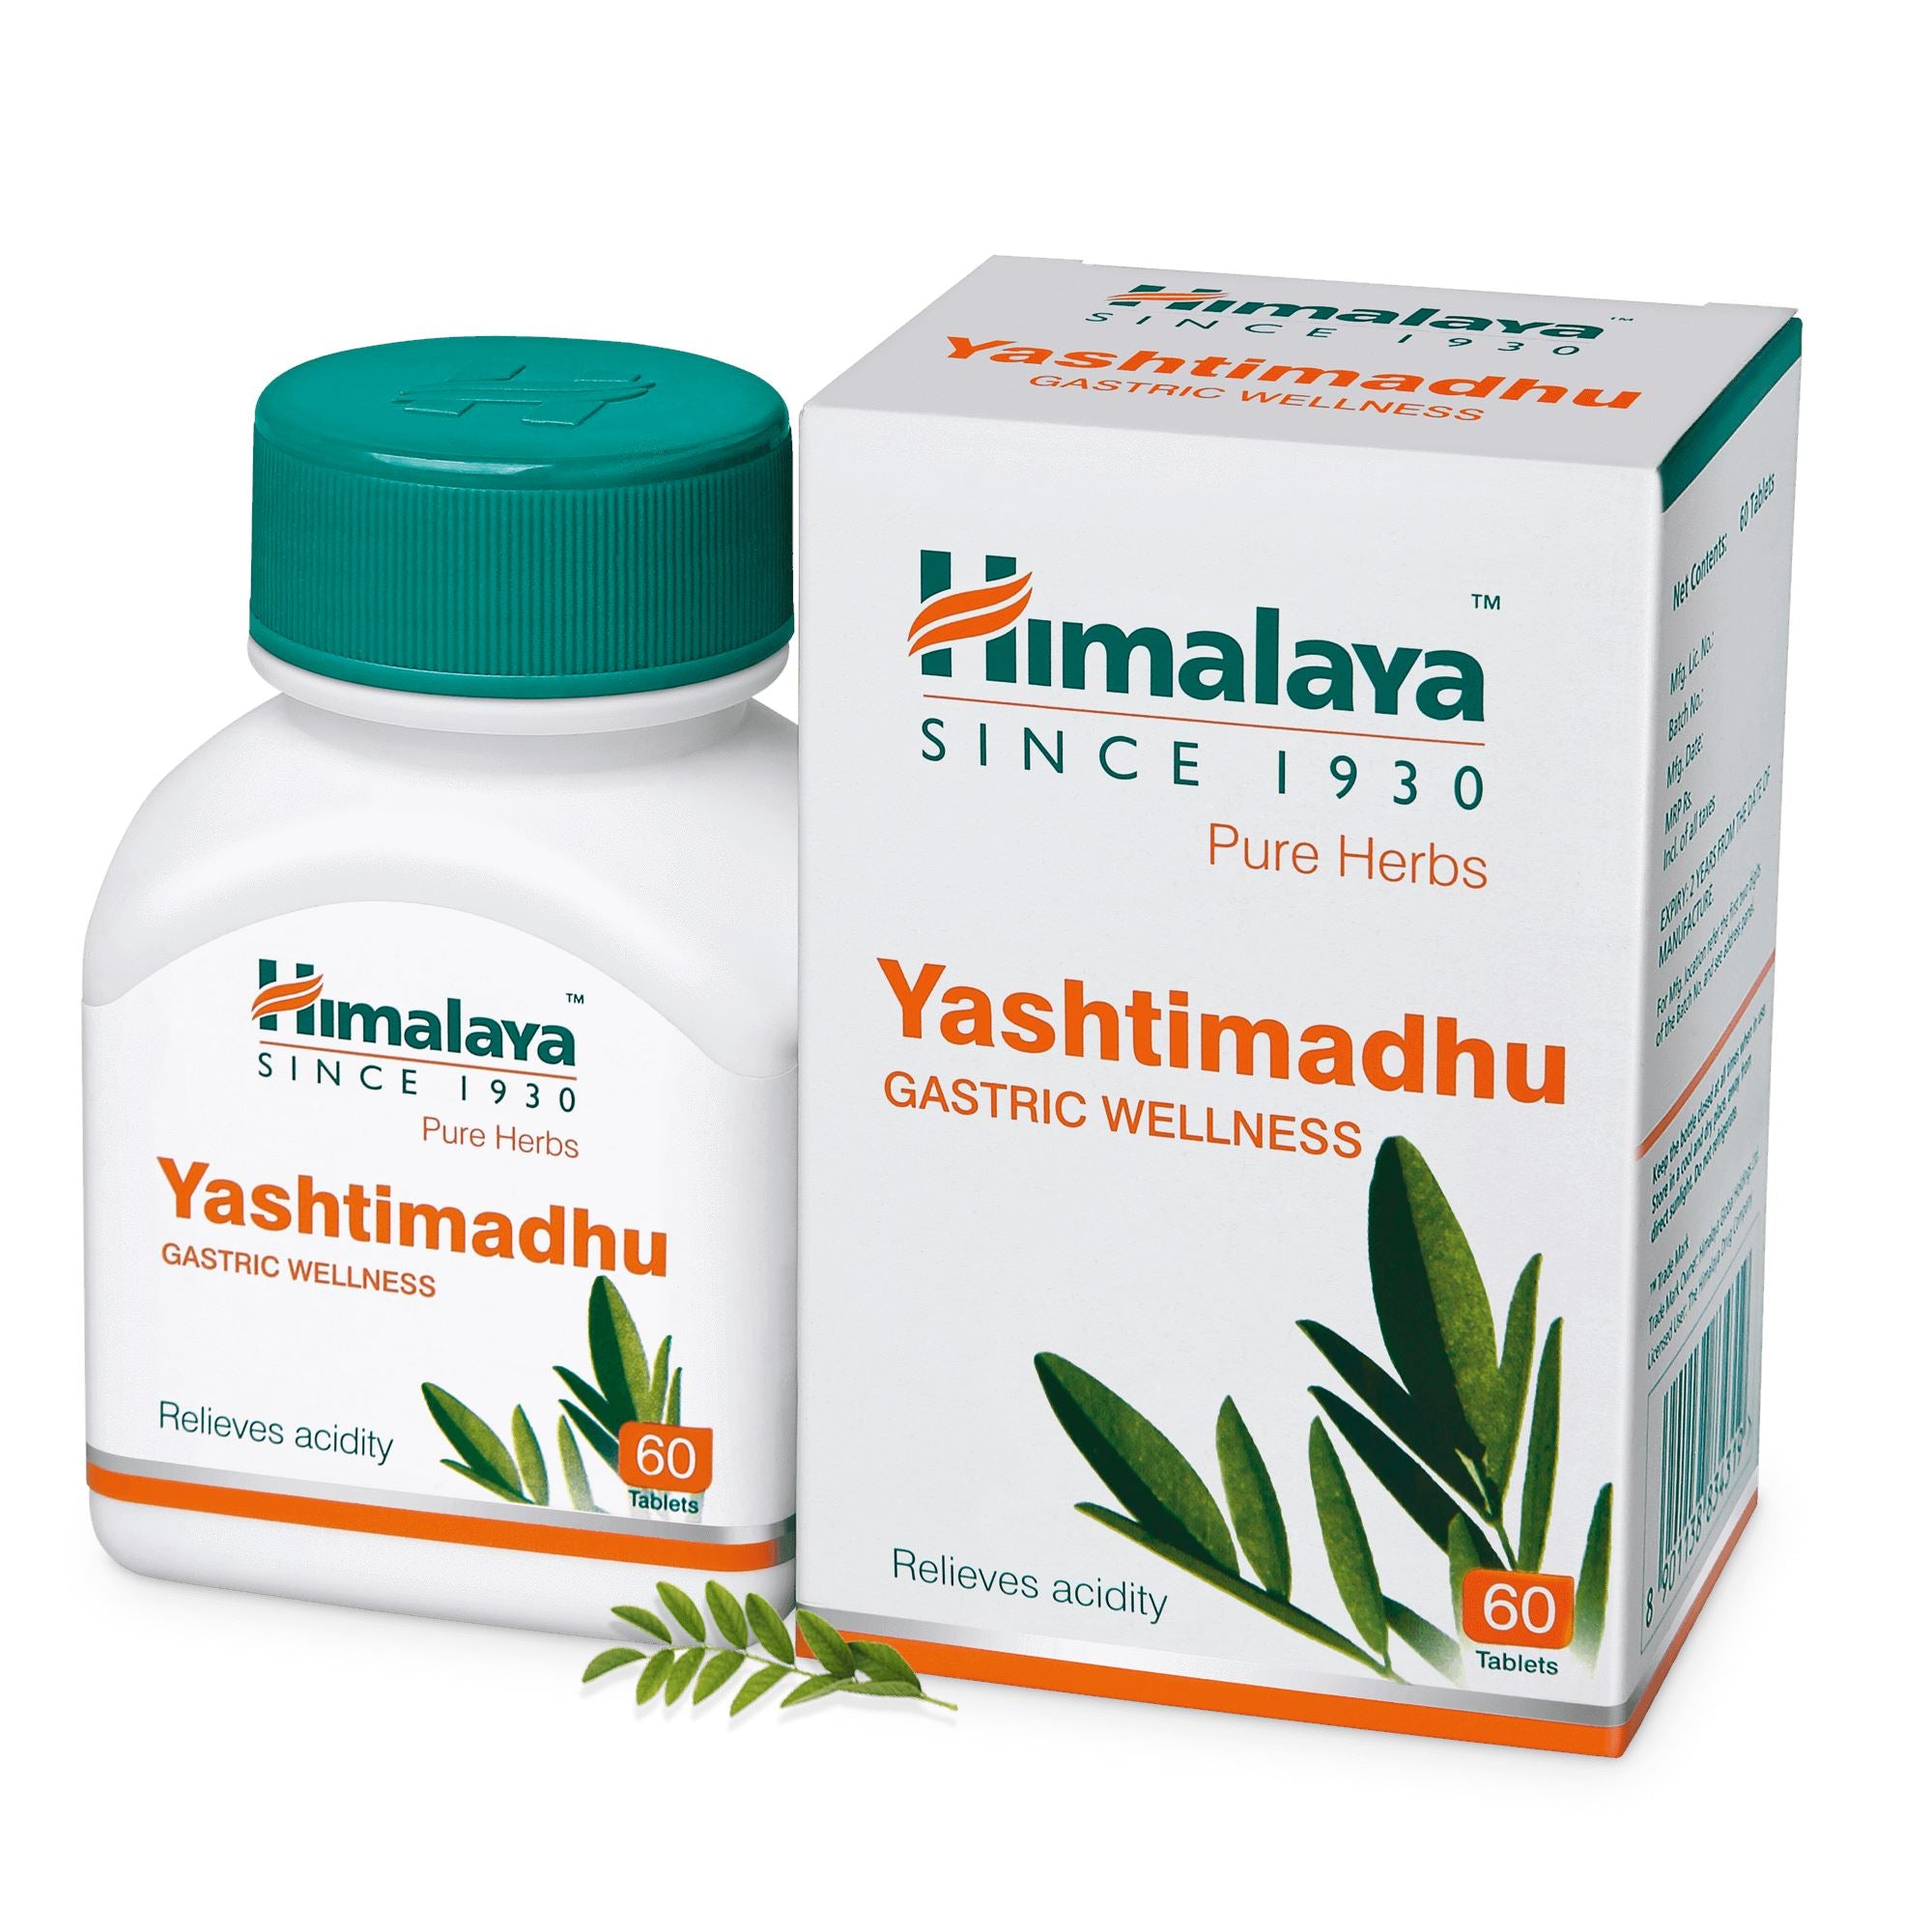 Himalaya Yashtimadhu - Relieves acidity